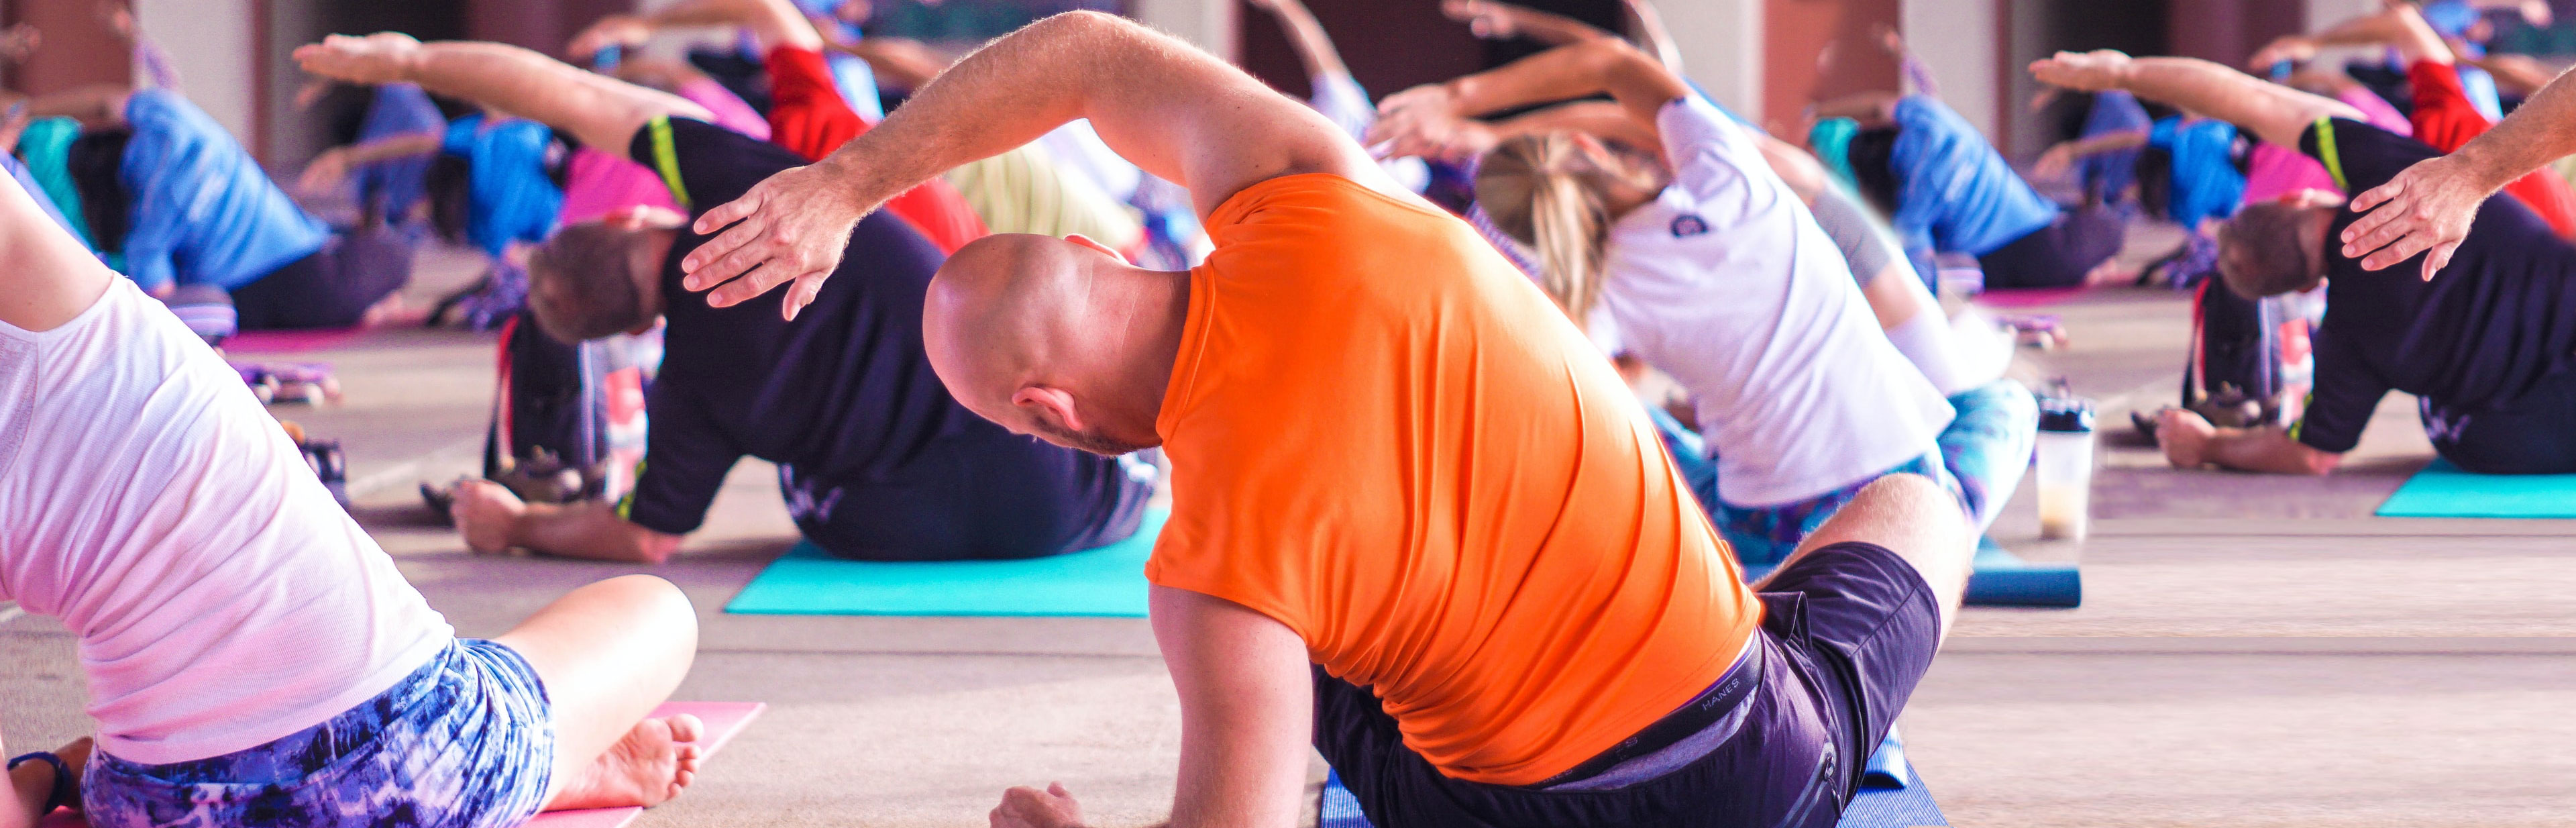 Leren ontspannen: probeer yoga!